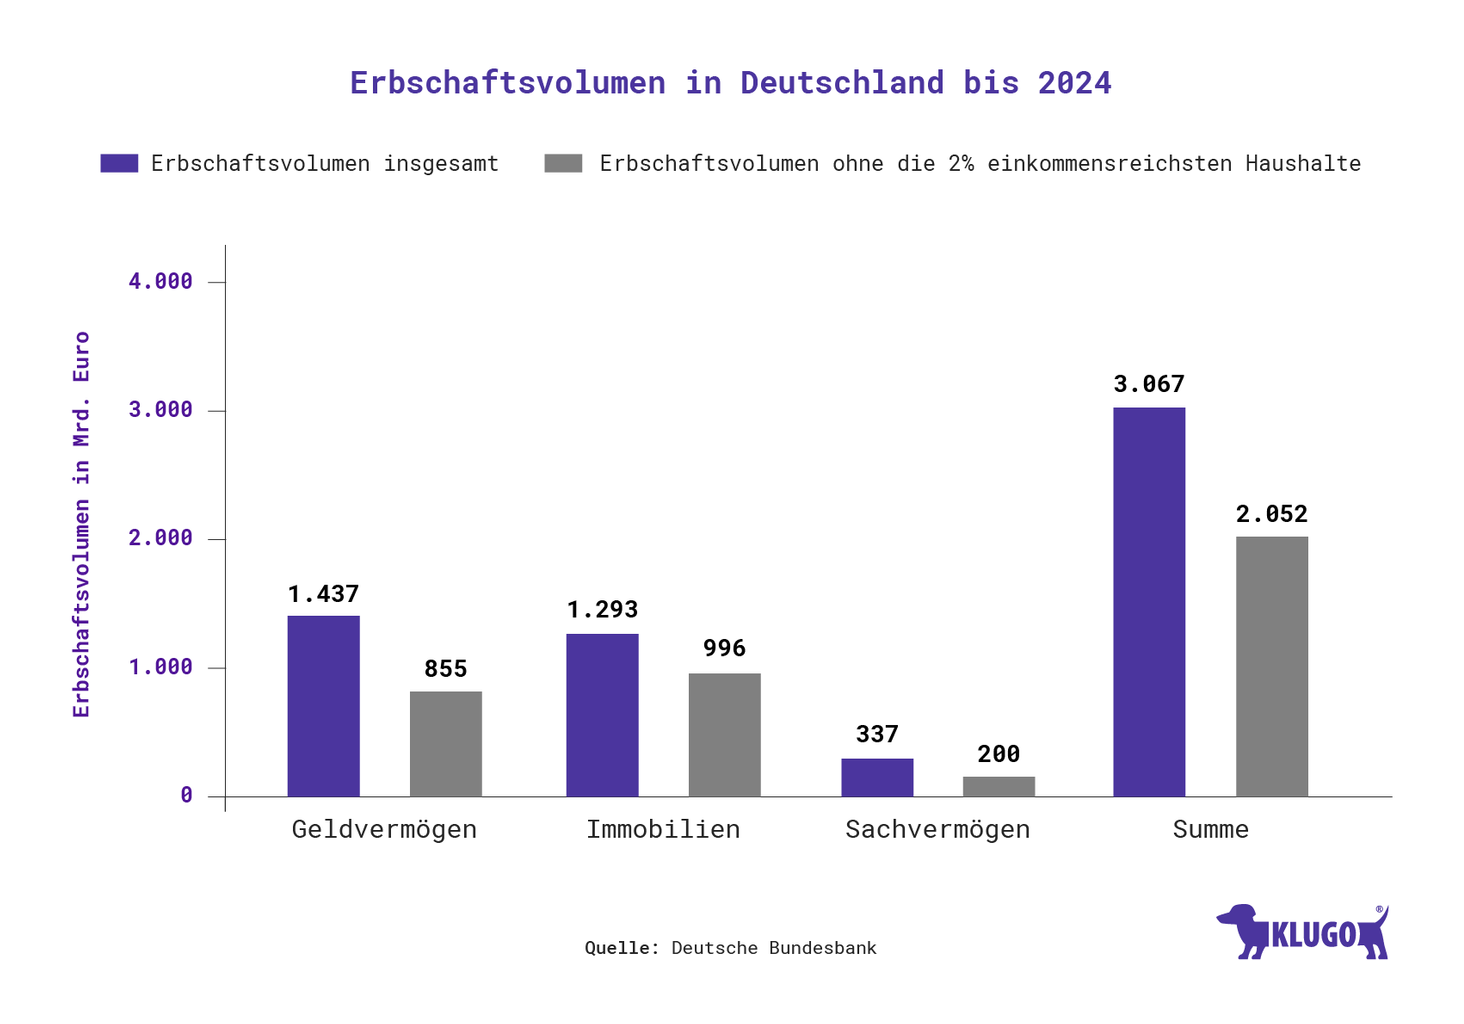 Erbschaftsvolumen in Deutschland – Infografik